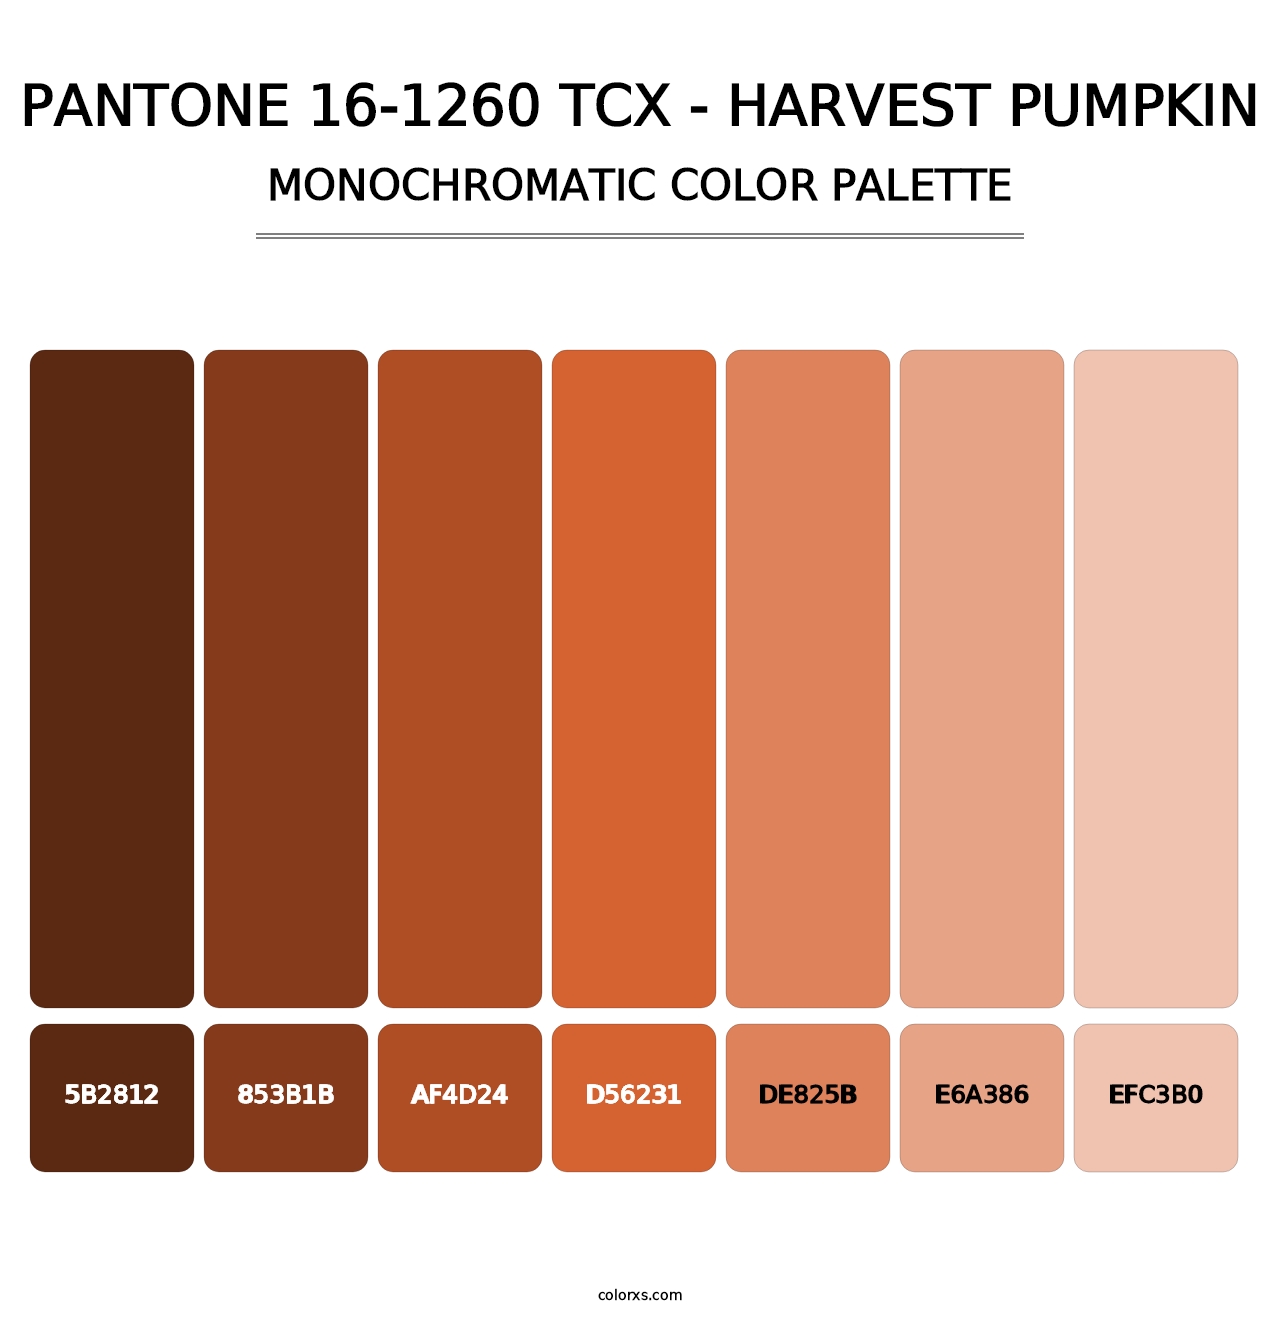 PANTONE 16-1260 TCX - Harvest Pumpkin - Monochromatic Color Palette